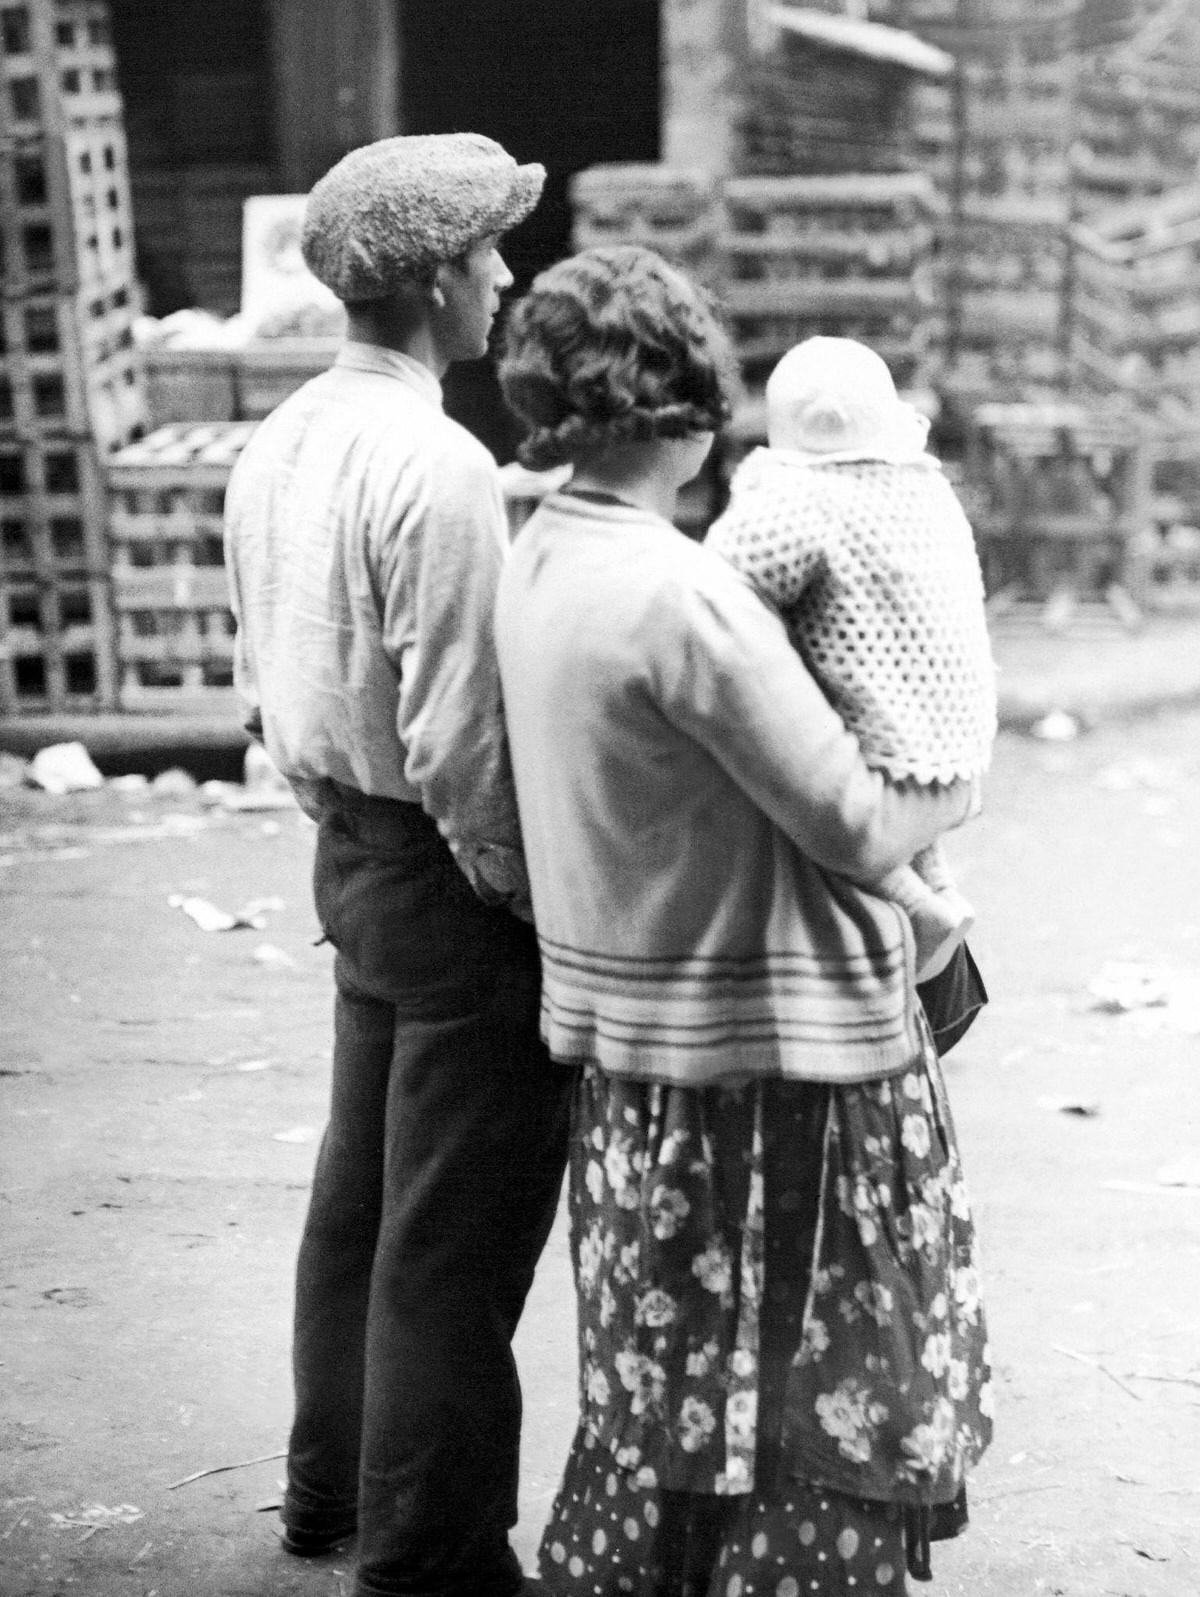 Parisian family in the Les Halles district of Paris, France, 1930.